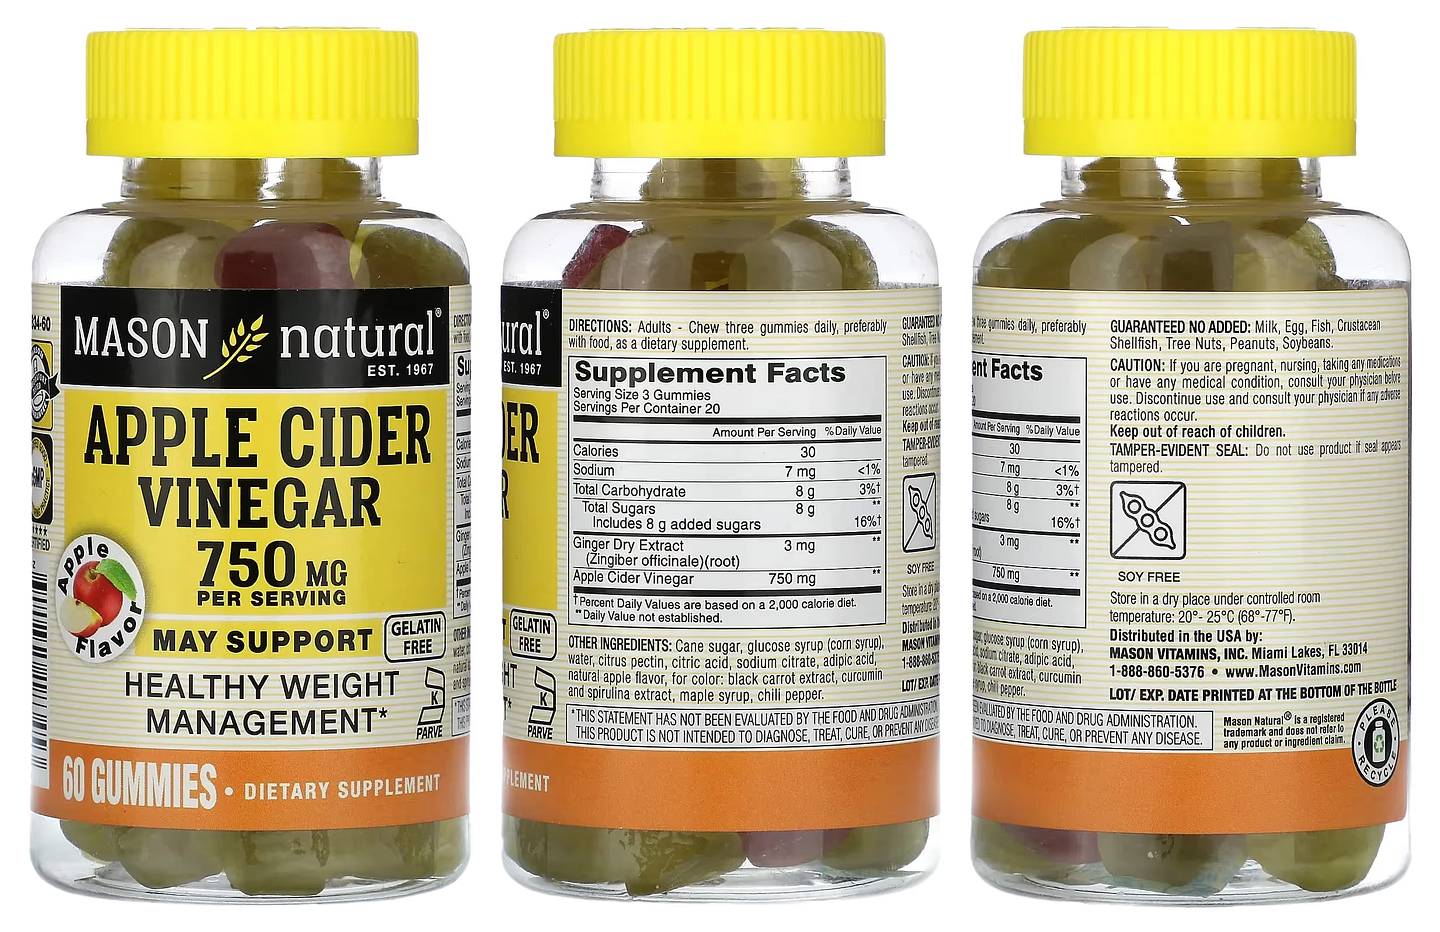 Mason Natural, Apple Cider Vinegar packaging